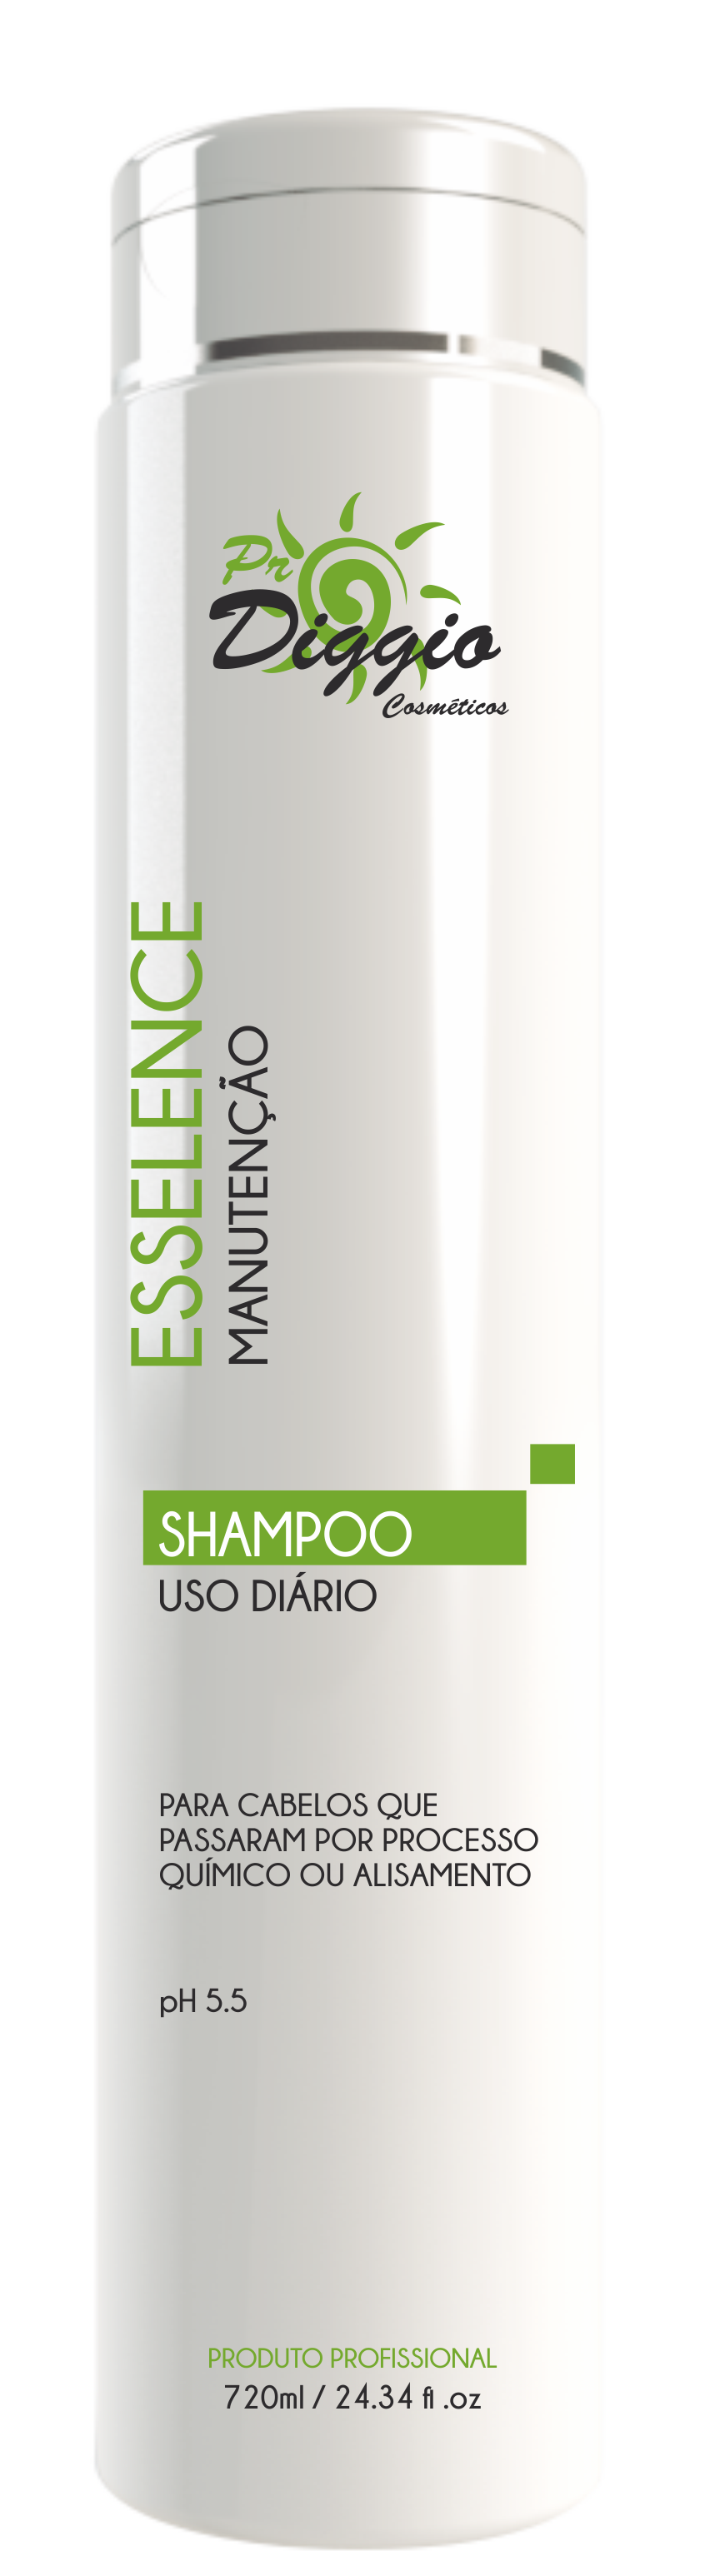 Shampoo Esselence 720ml